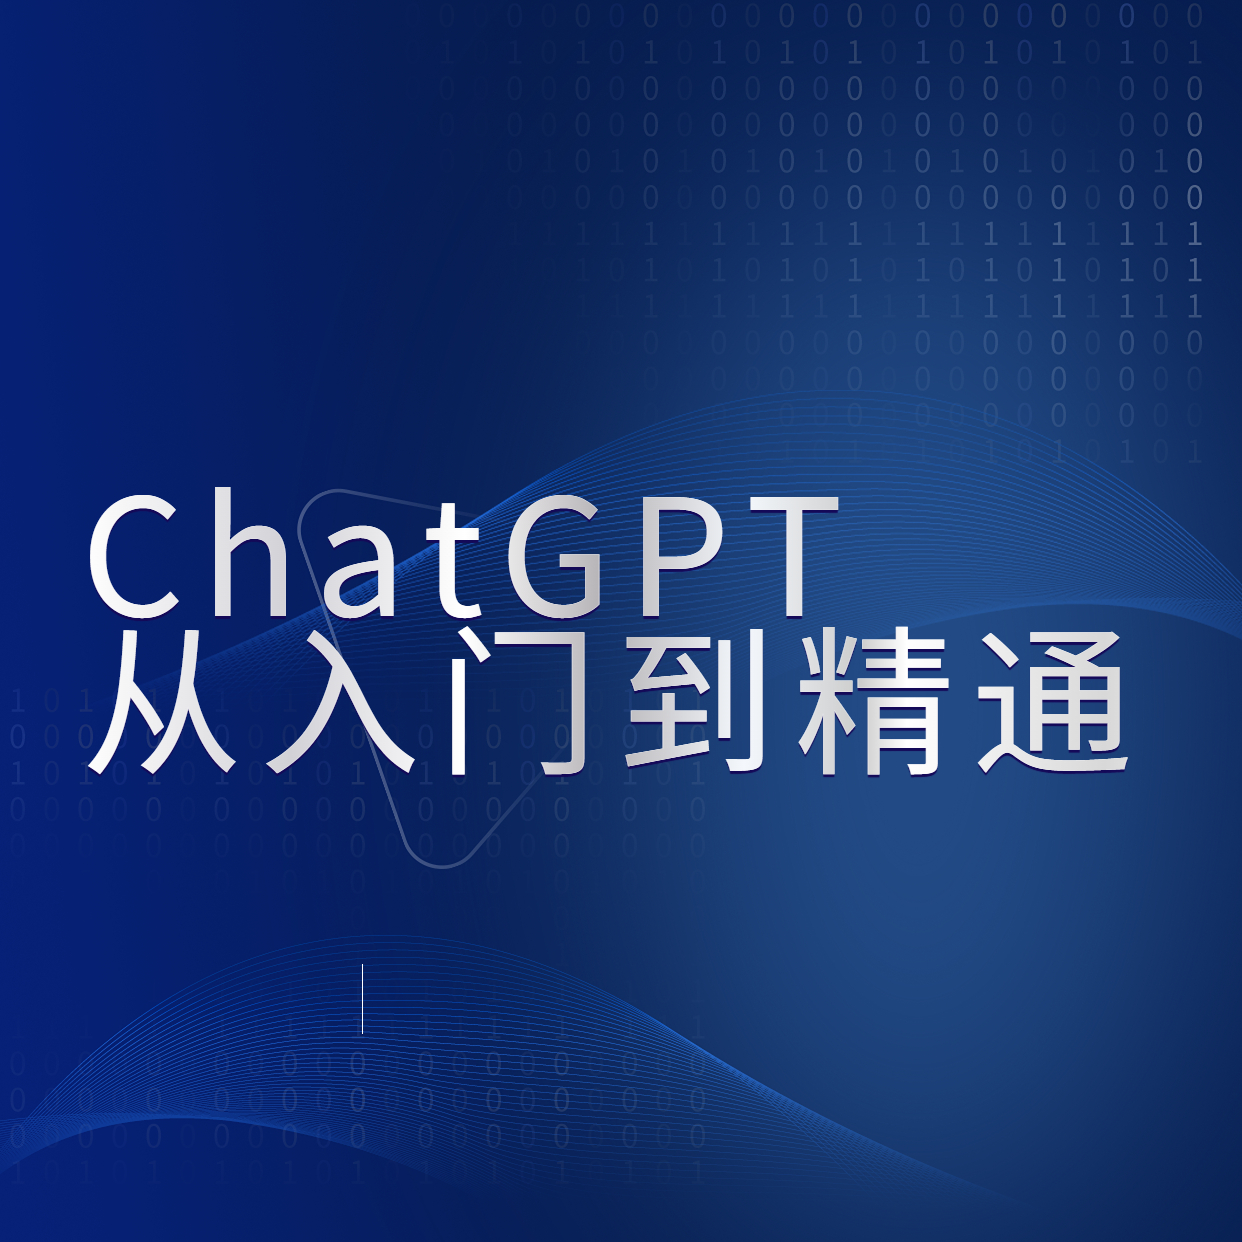 ChatGPT__从入门到精通 (1)